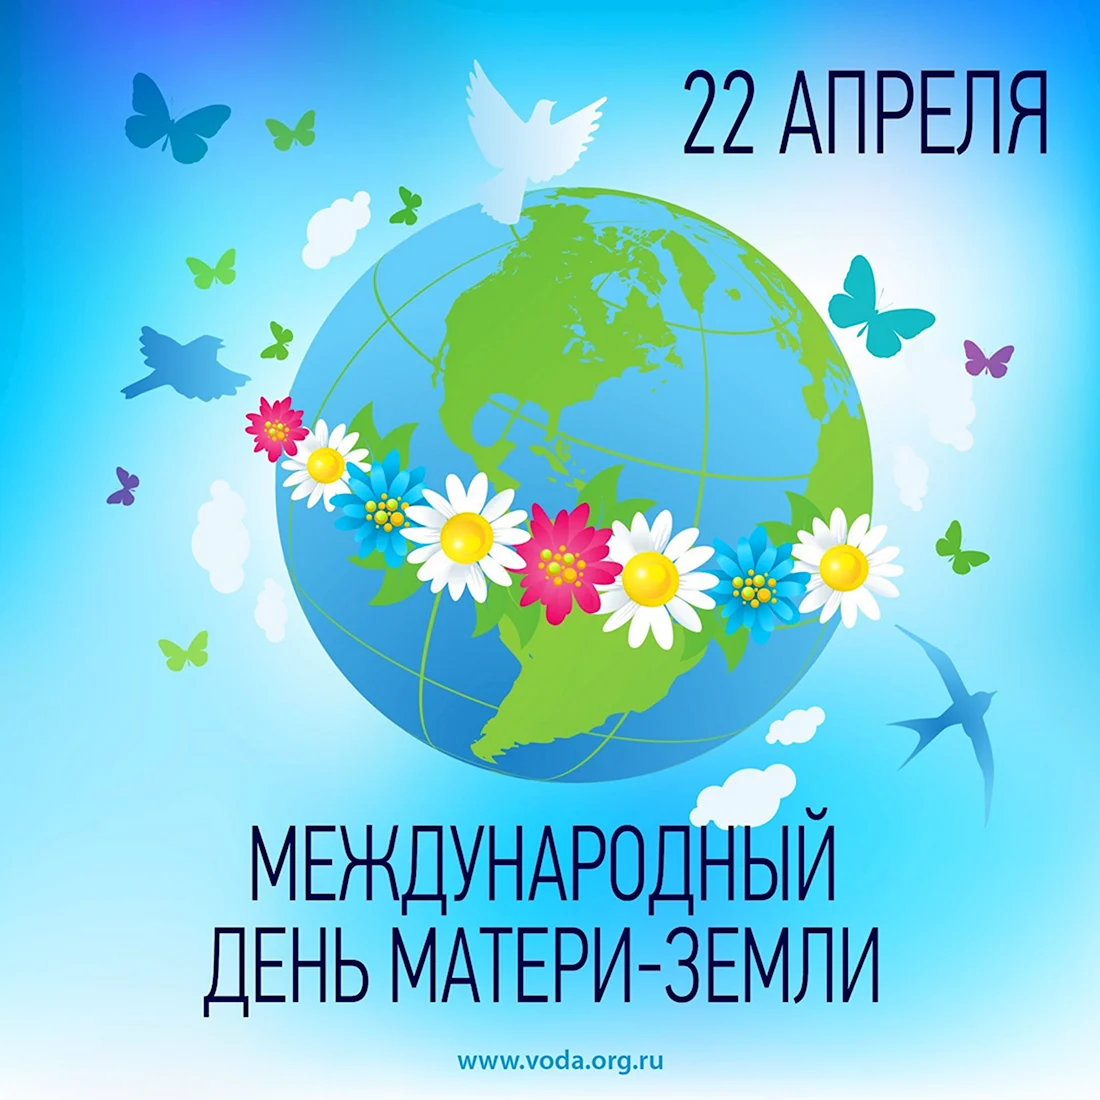 Международный день матери-земли 22 апреля. Поздравление на праздник